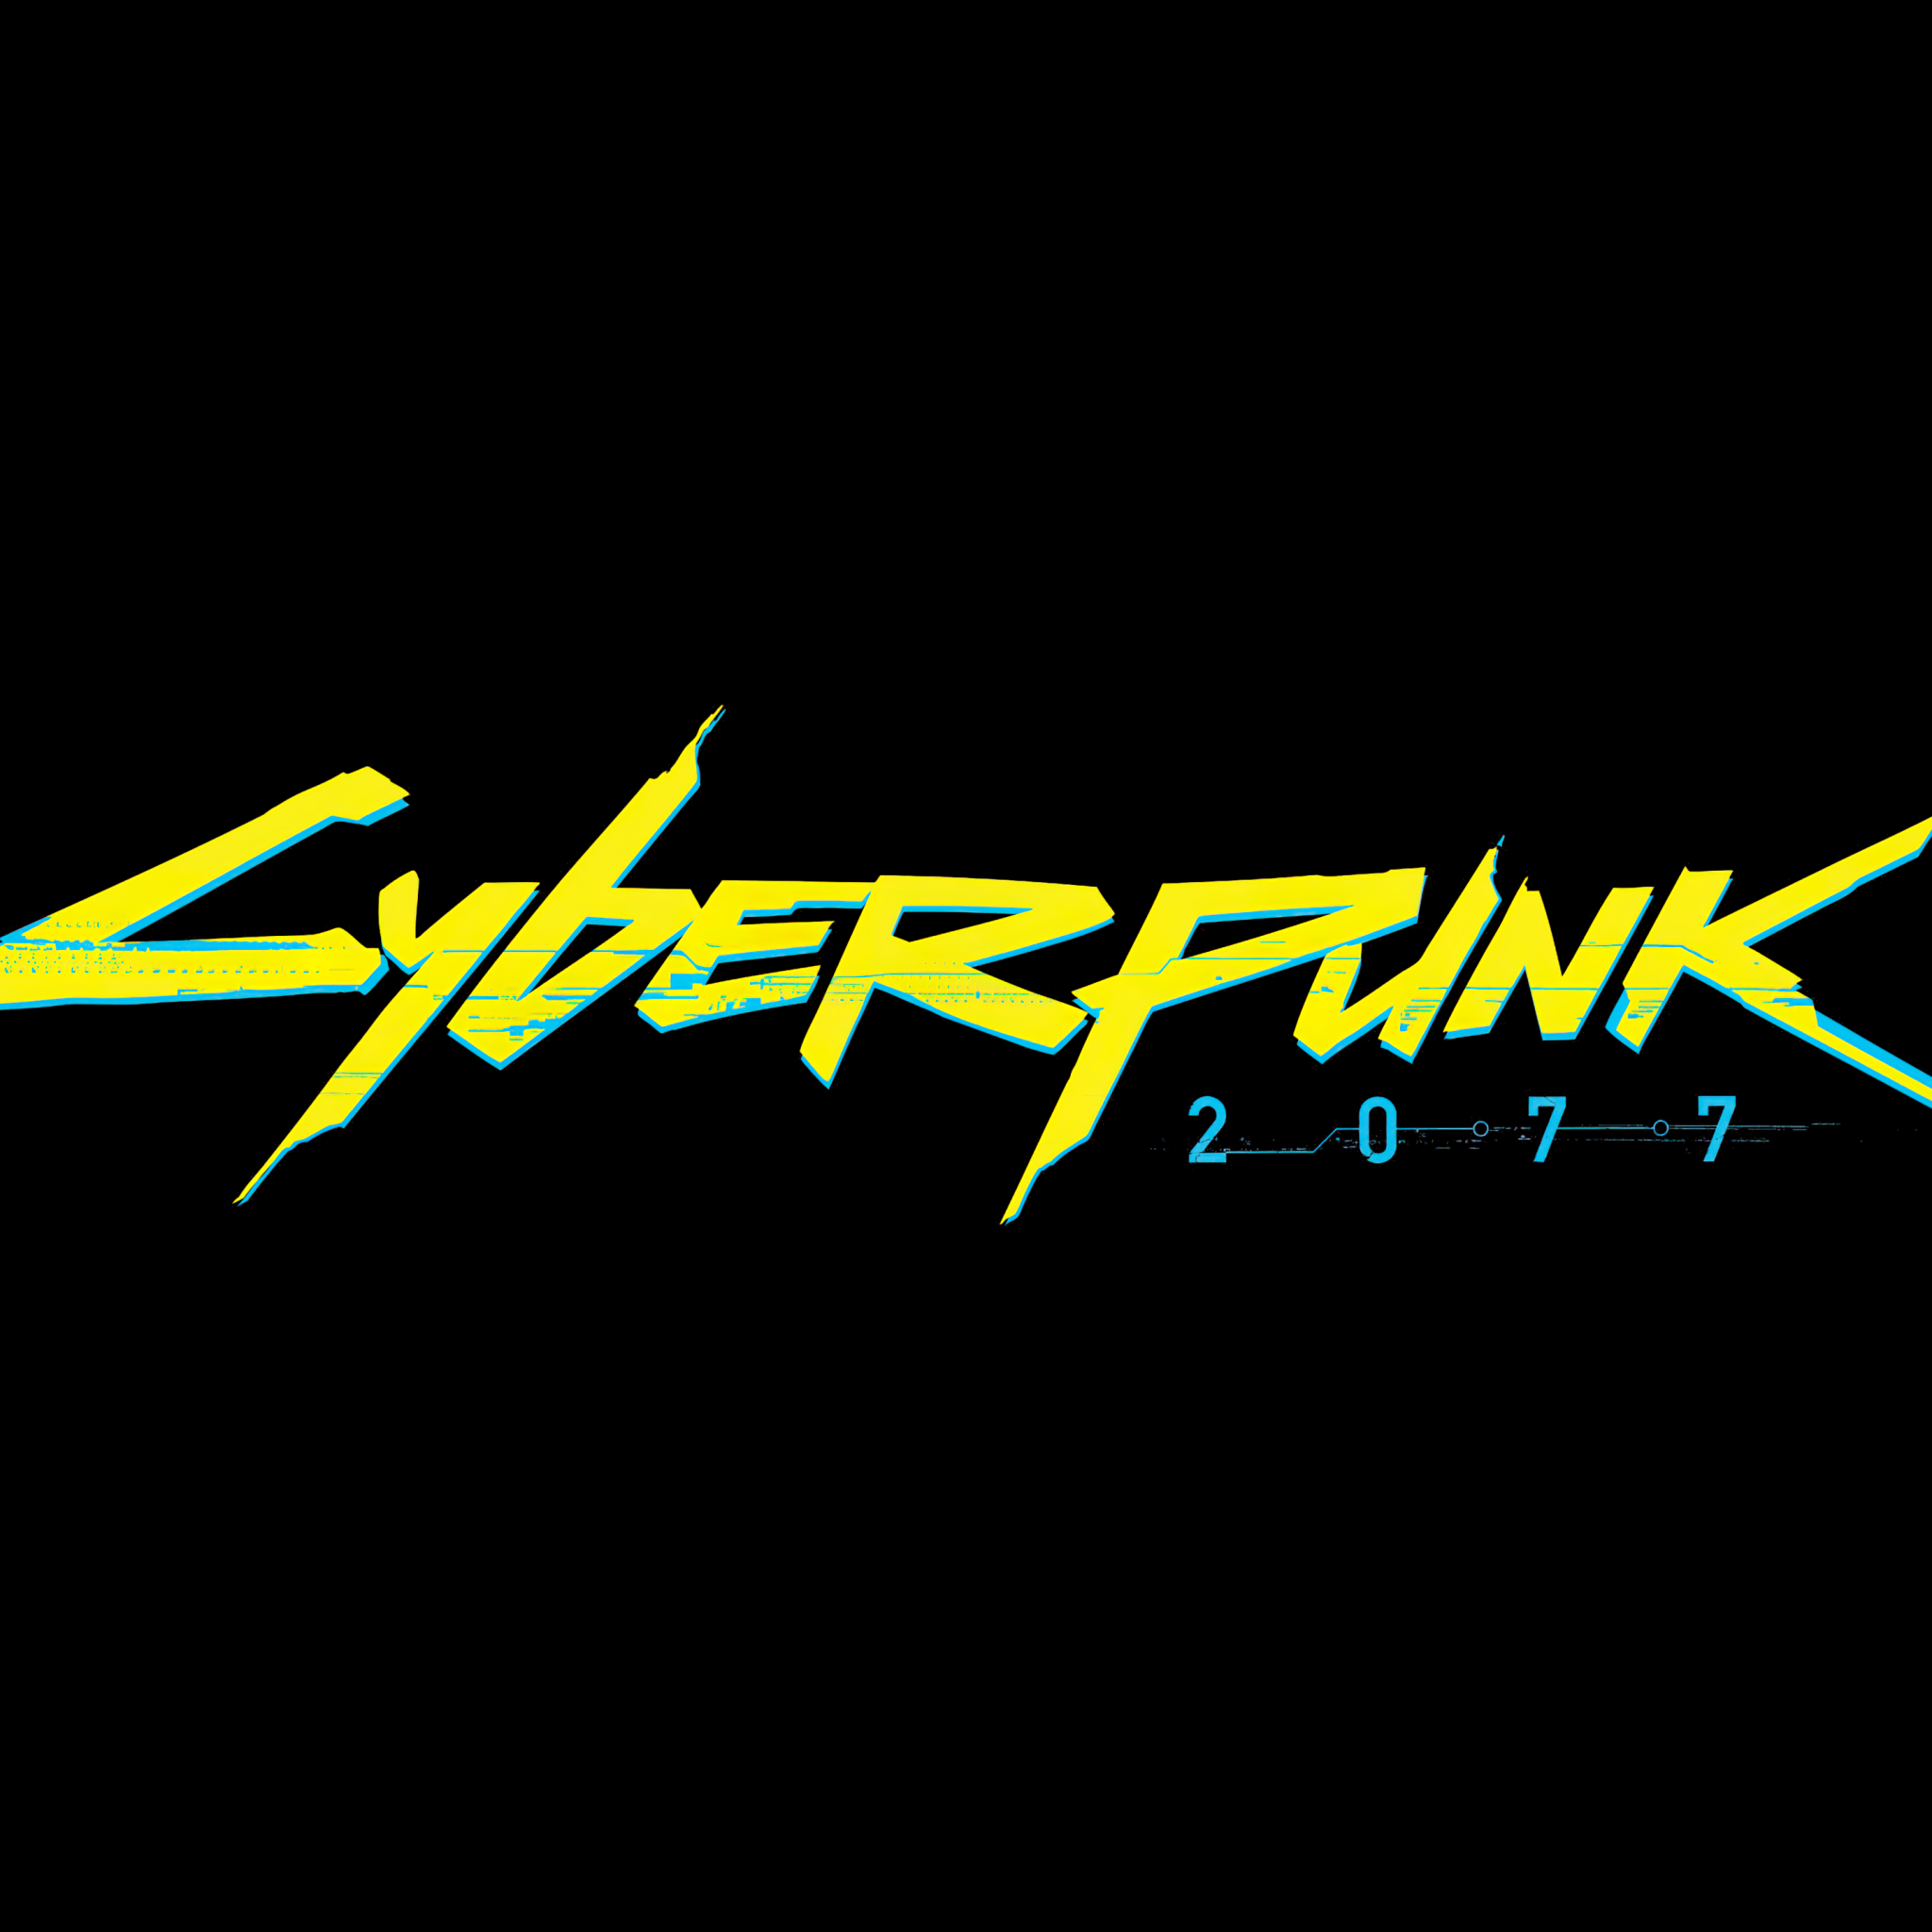 Militech cyberpunk logo фото 100